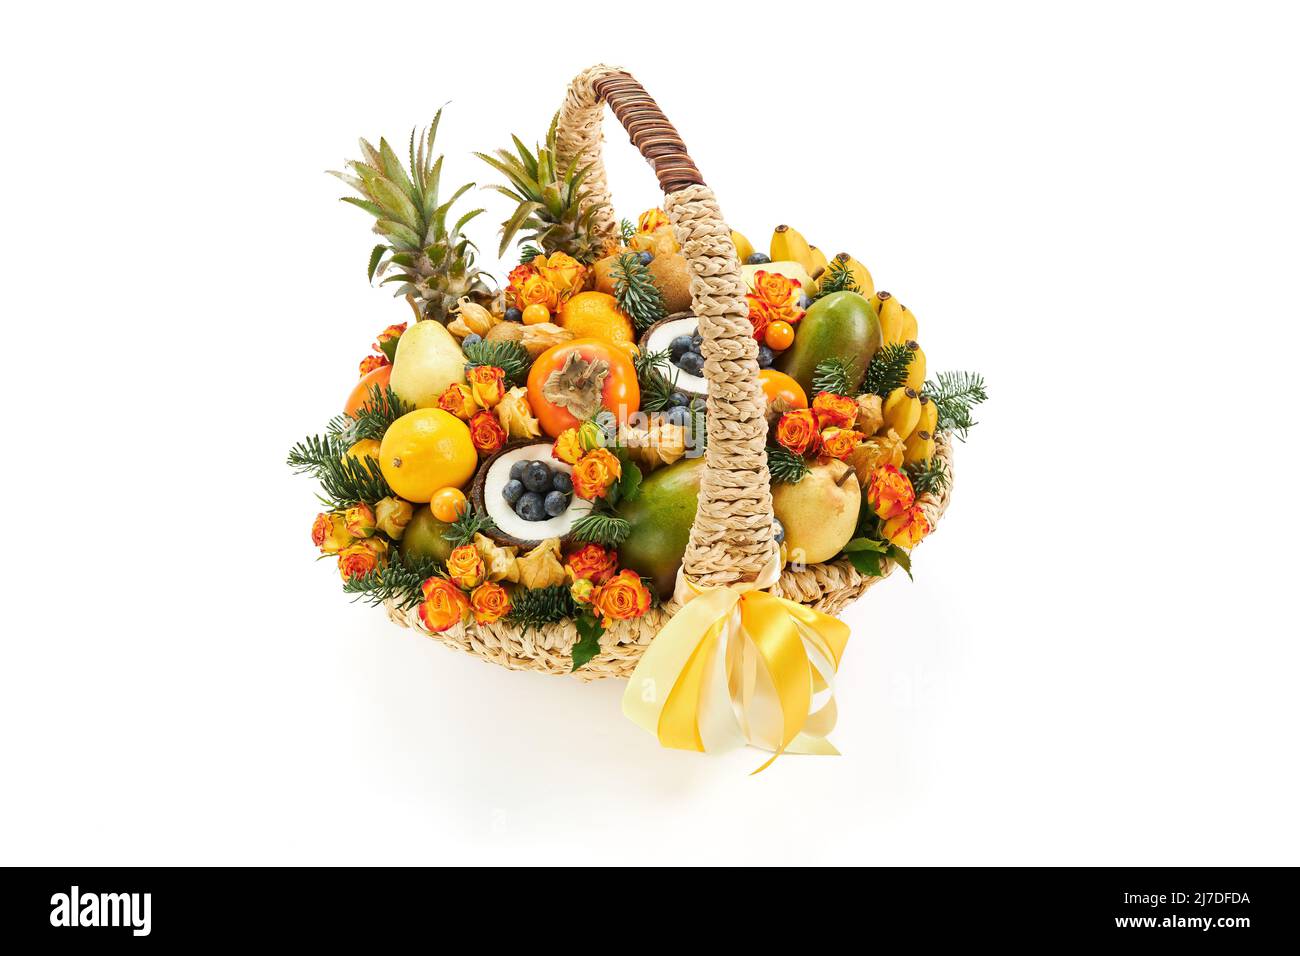 Gran cesta de mimbre llena de flores y frutas, decorada con ramitas de abeto sobre un fondo blanco Foto de stock